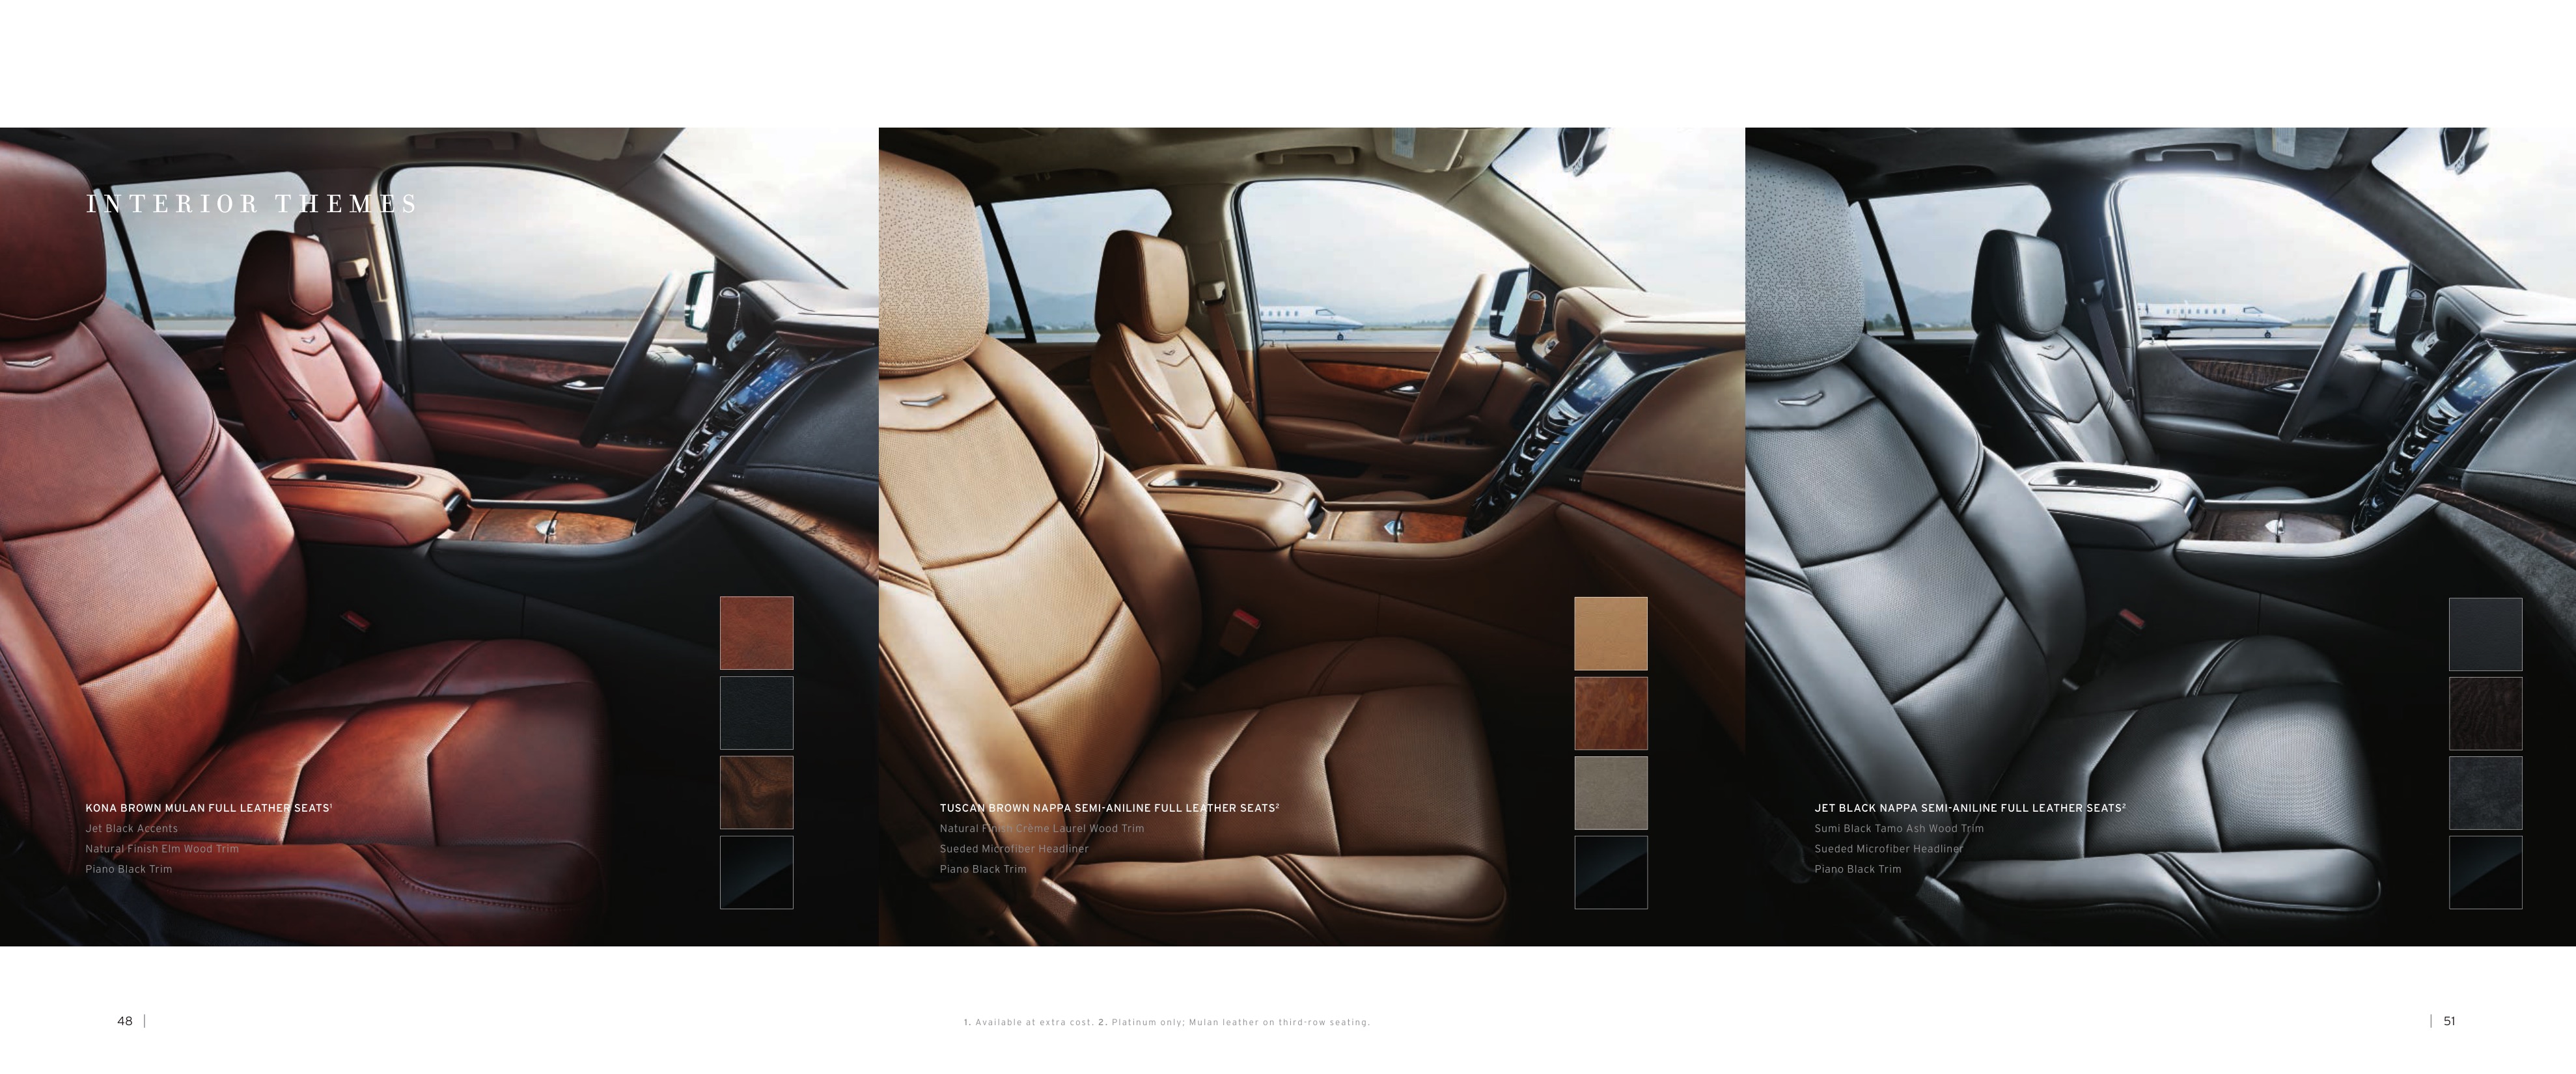 2015 Cadillac Escalade Brochure Page 25